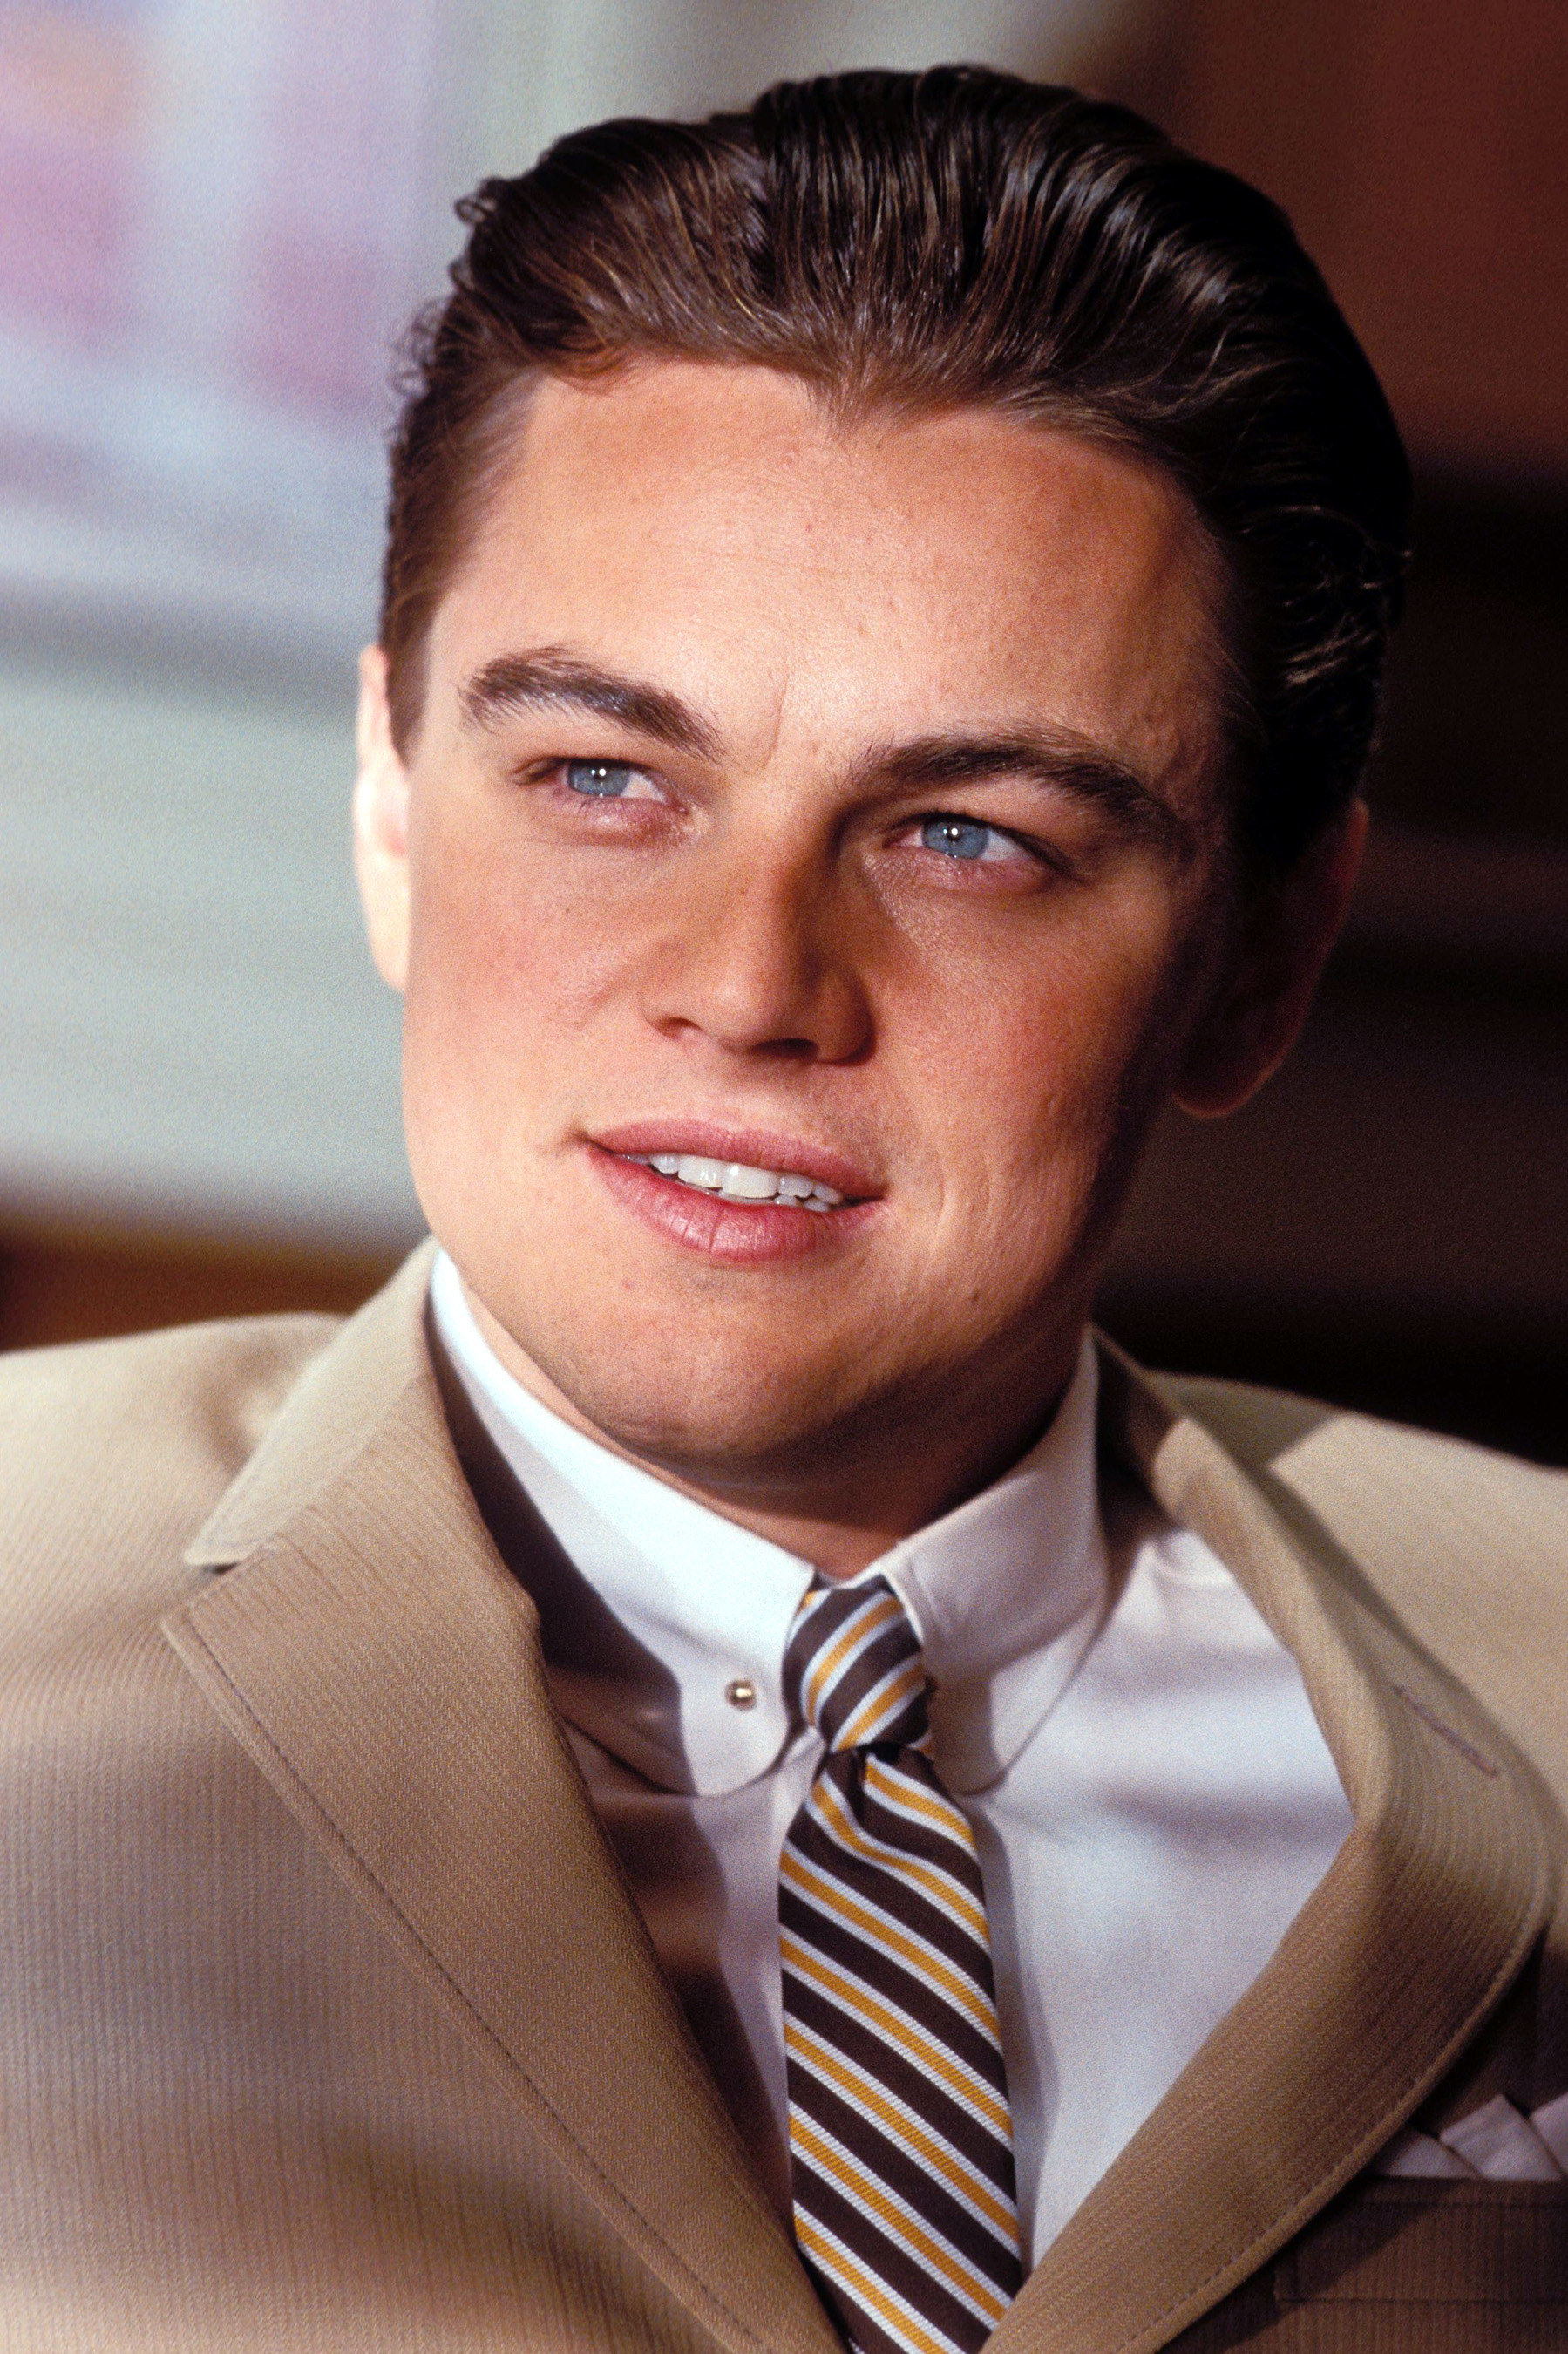 Leo in the film